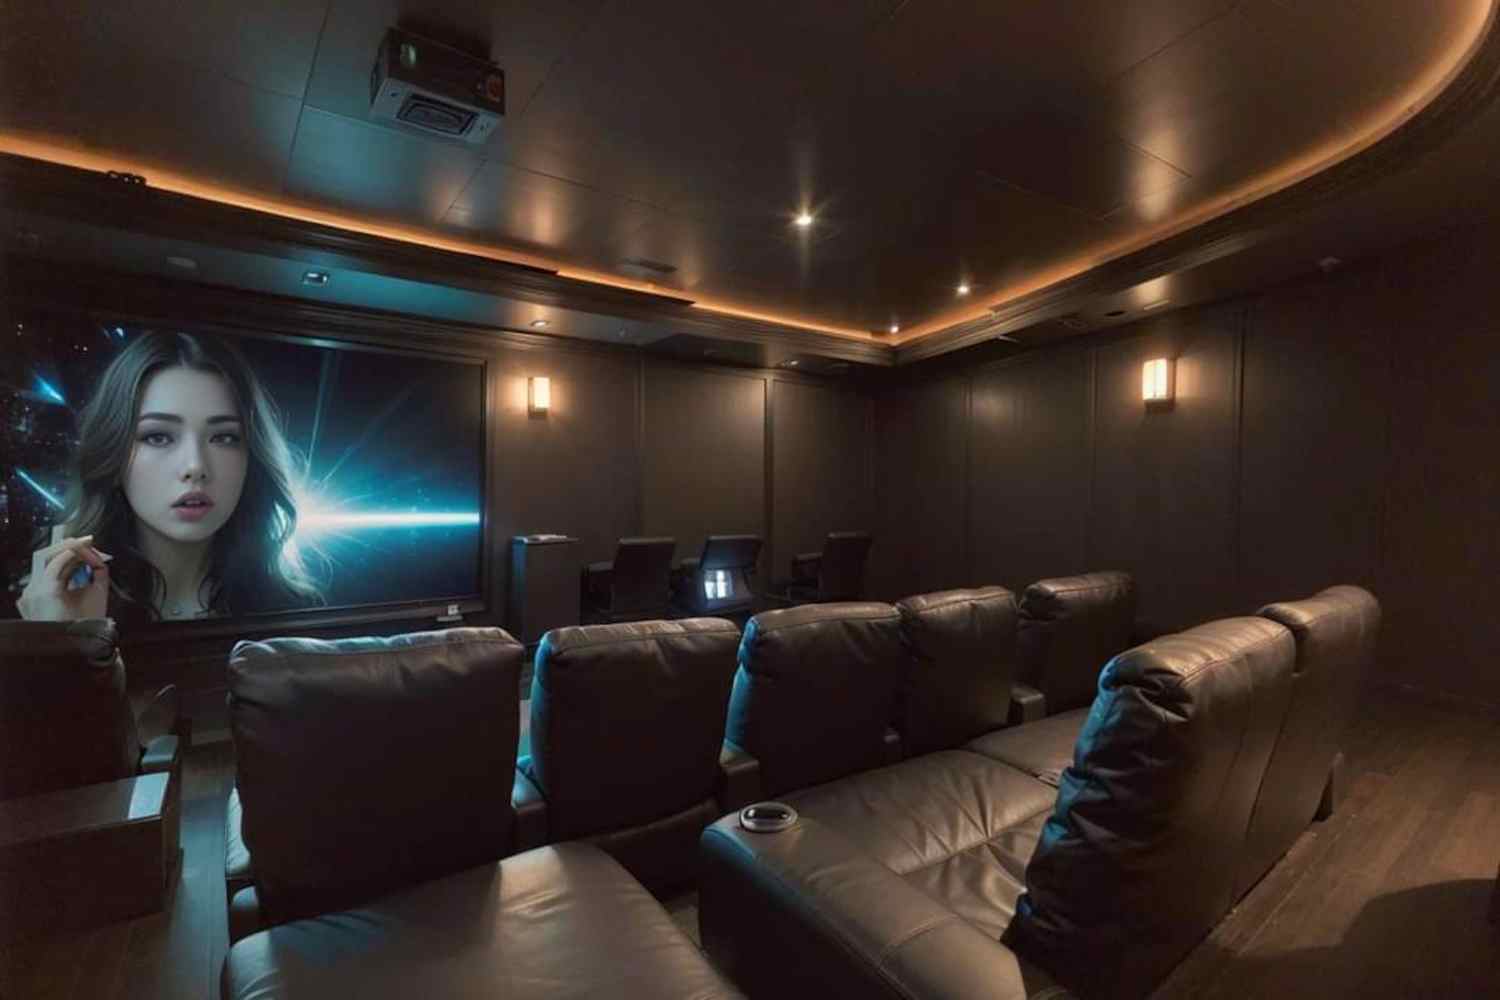 Make Cinema Room